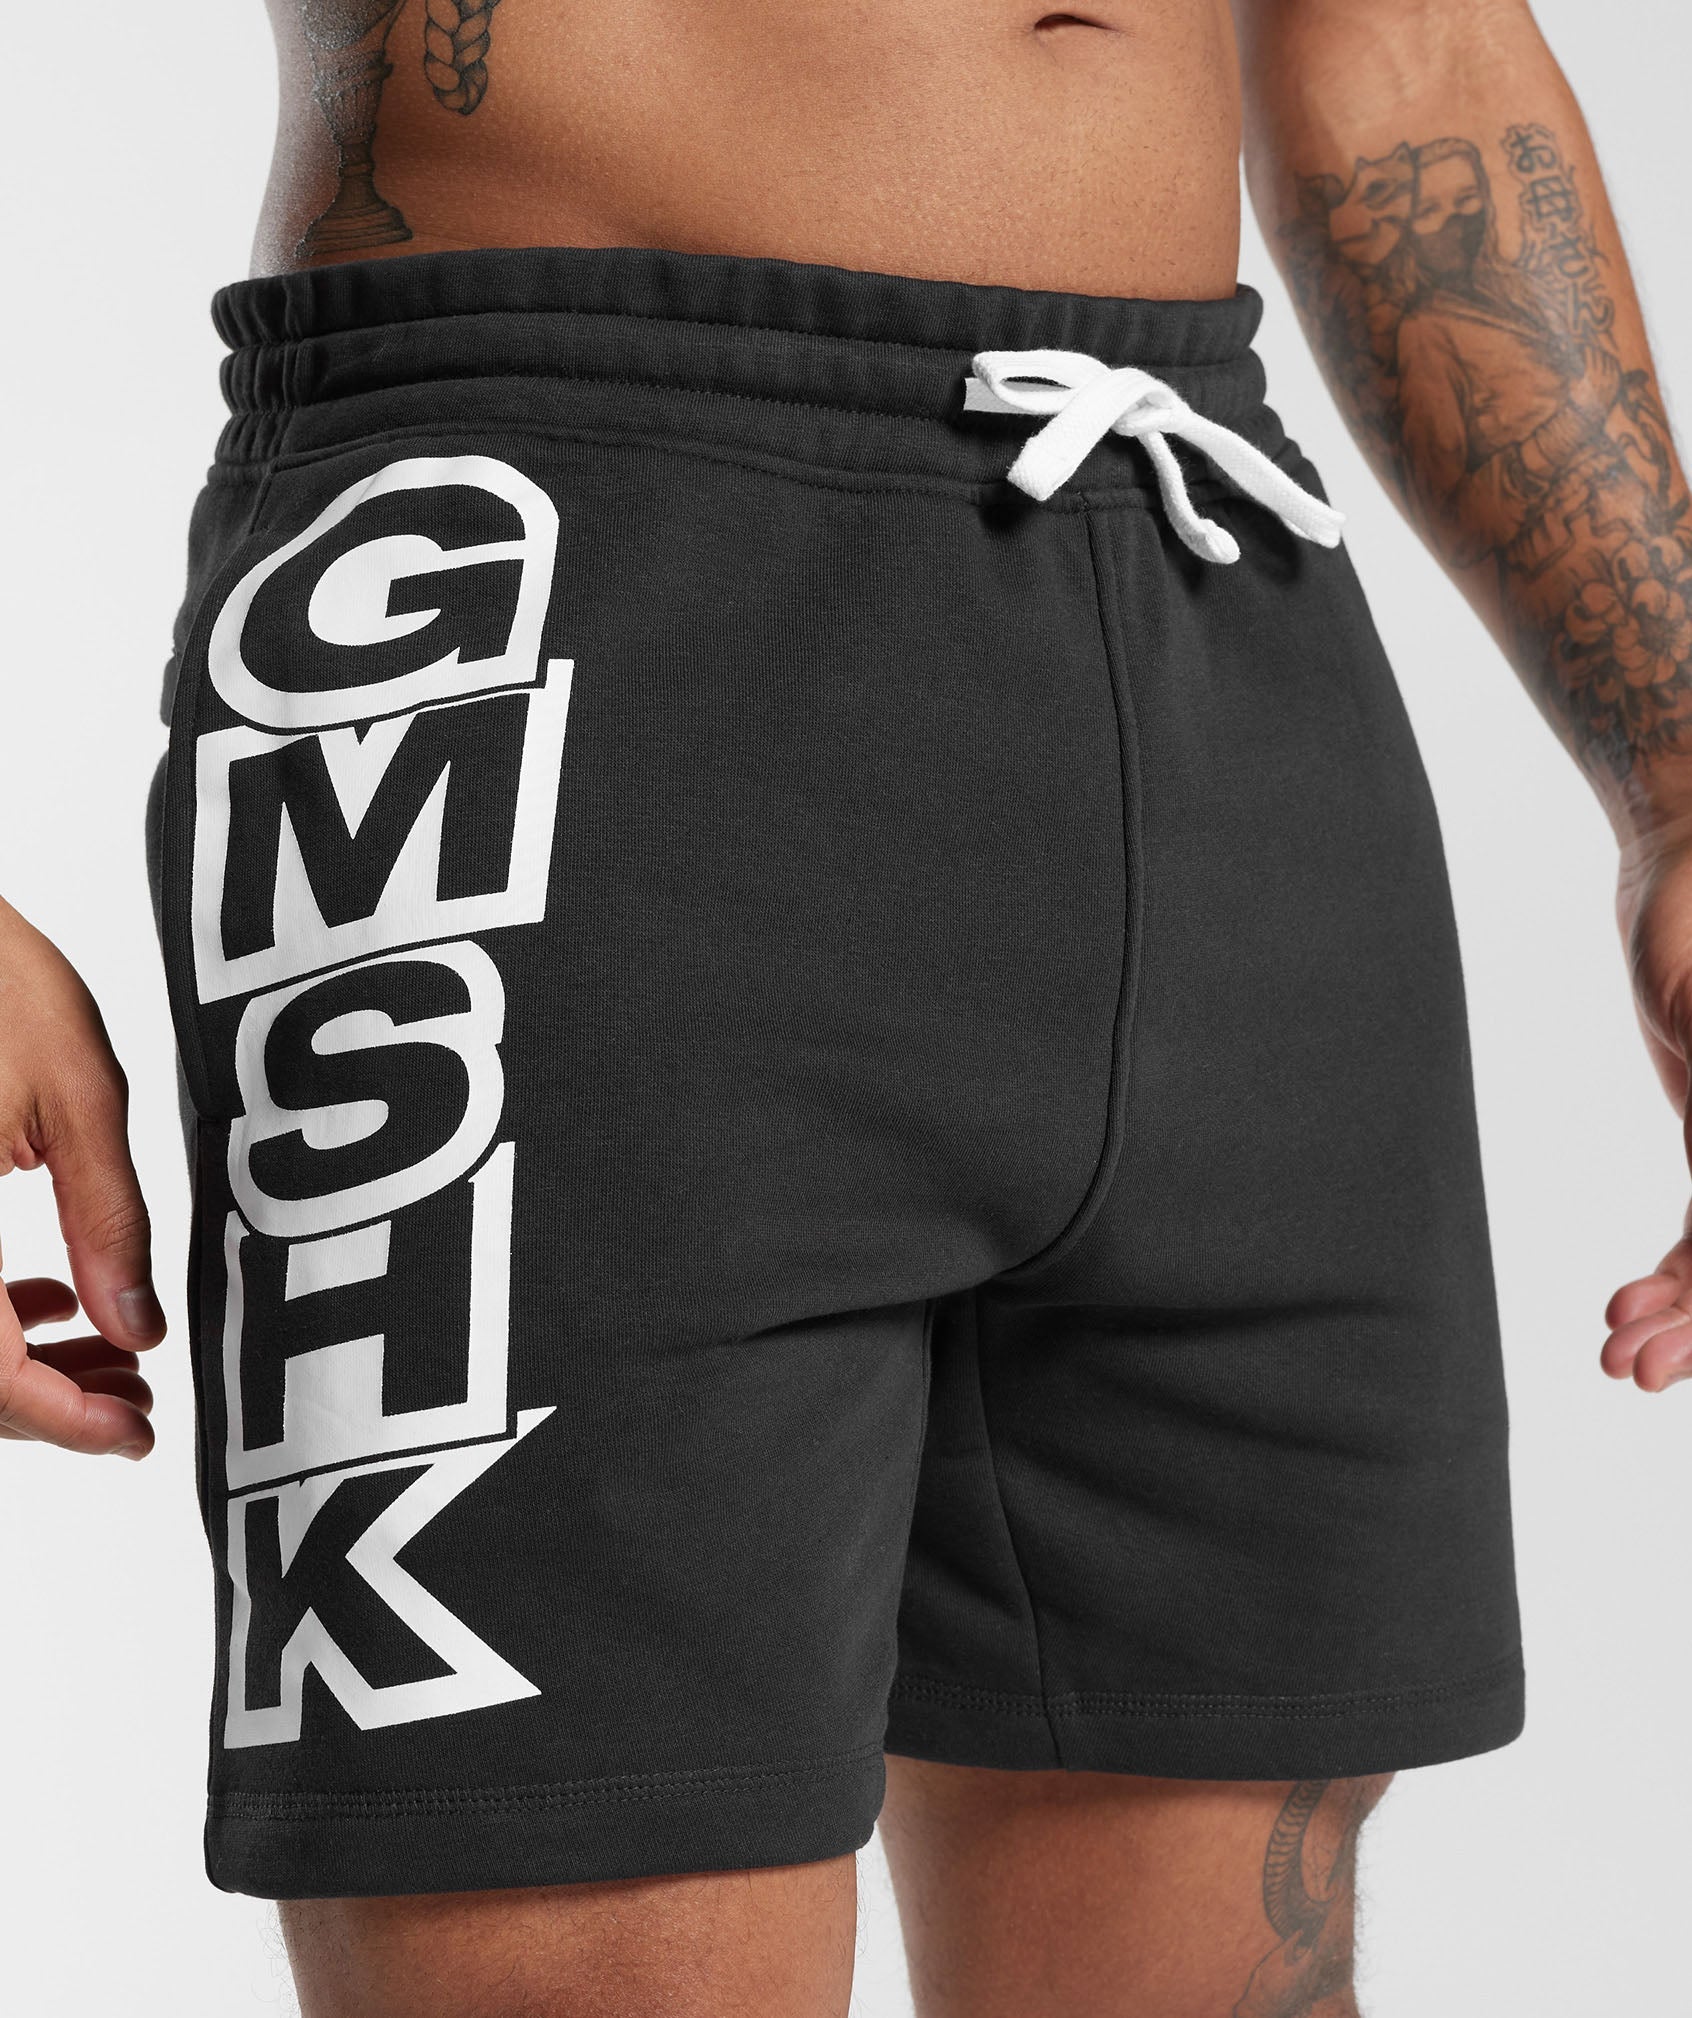 GMSHK Shorts in Black